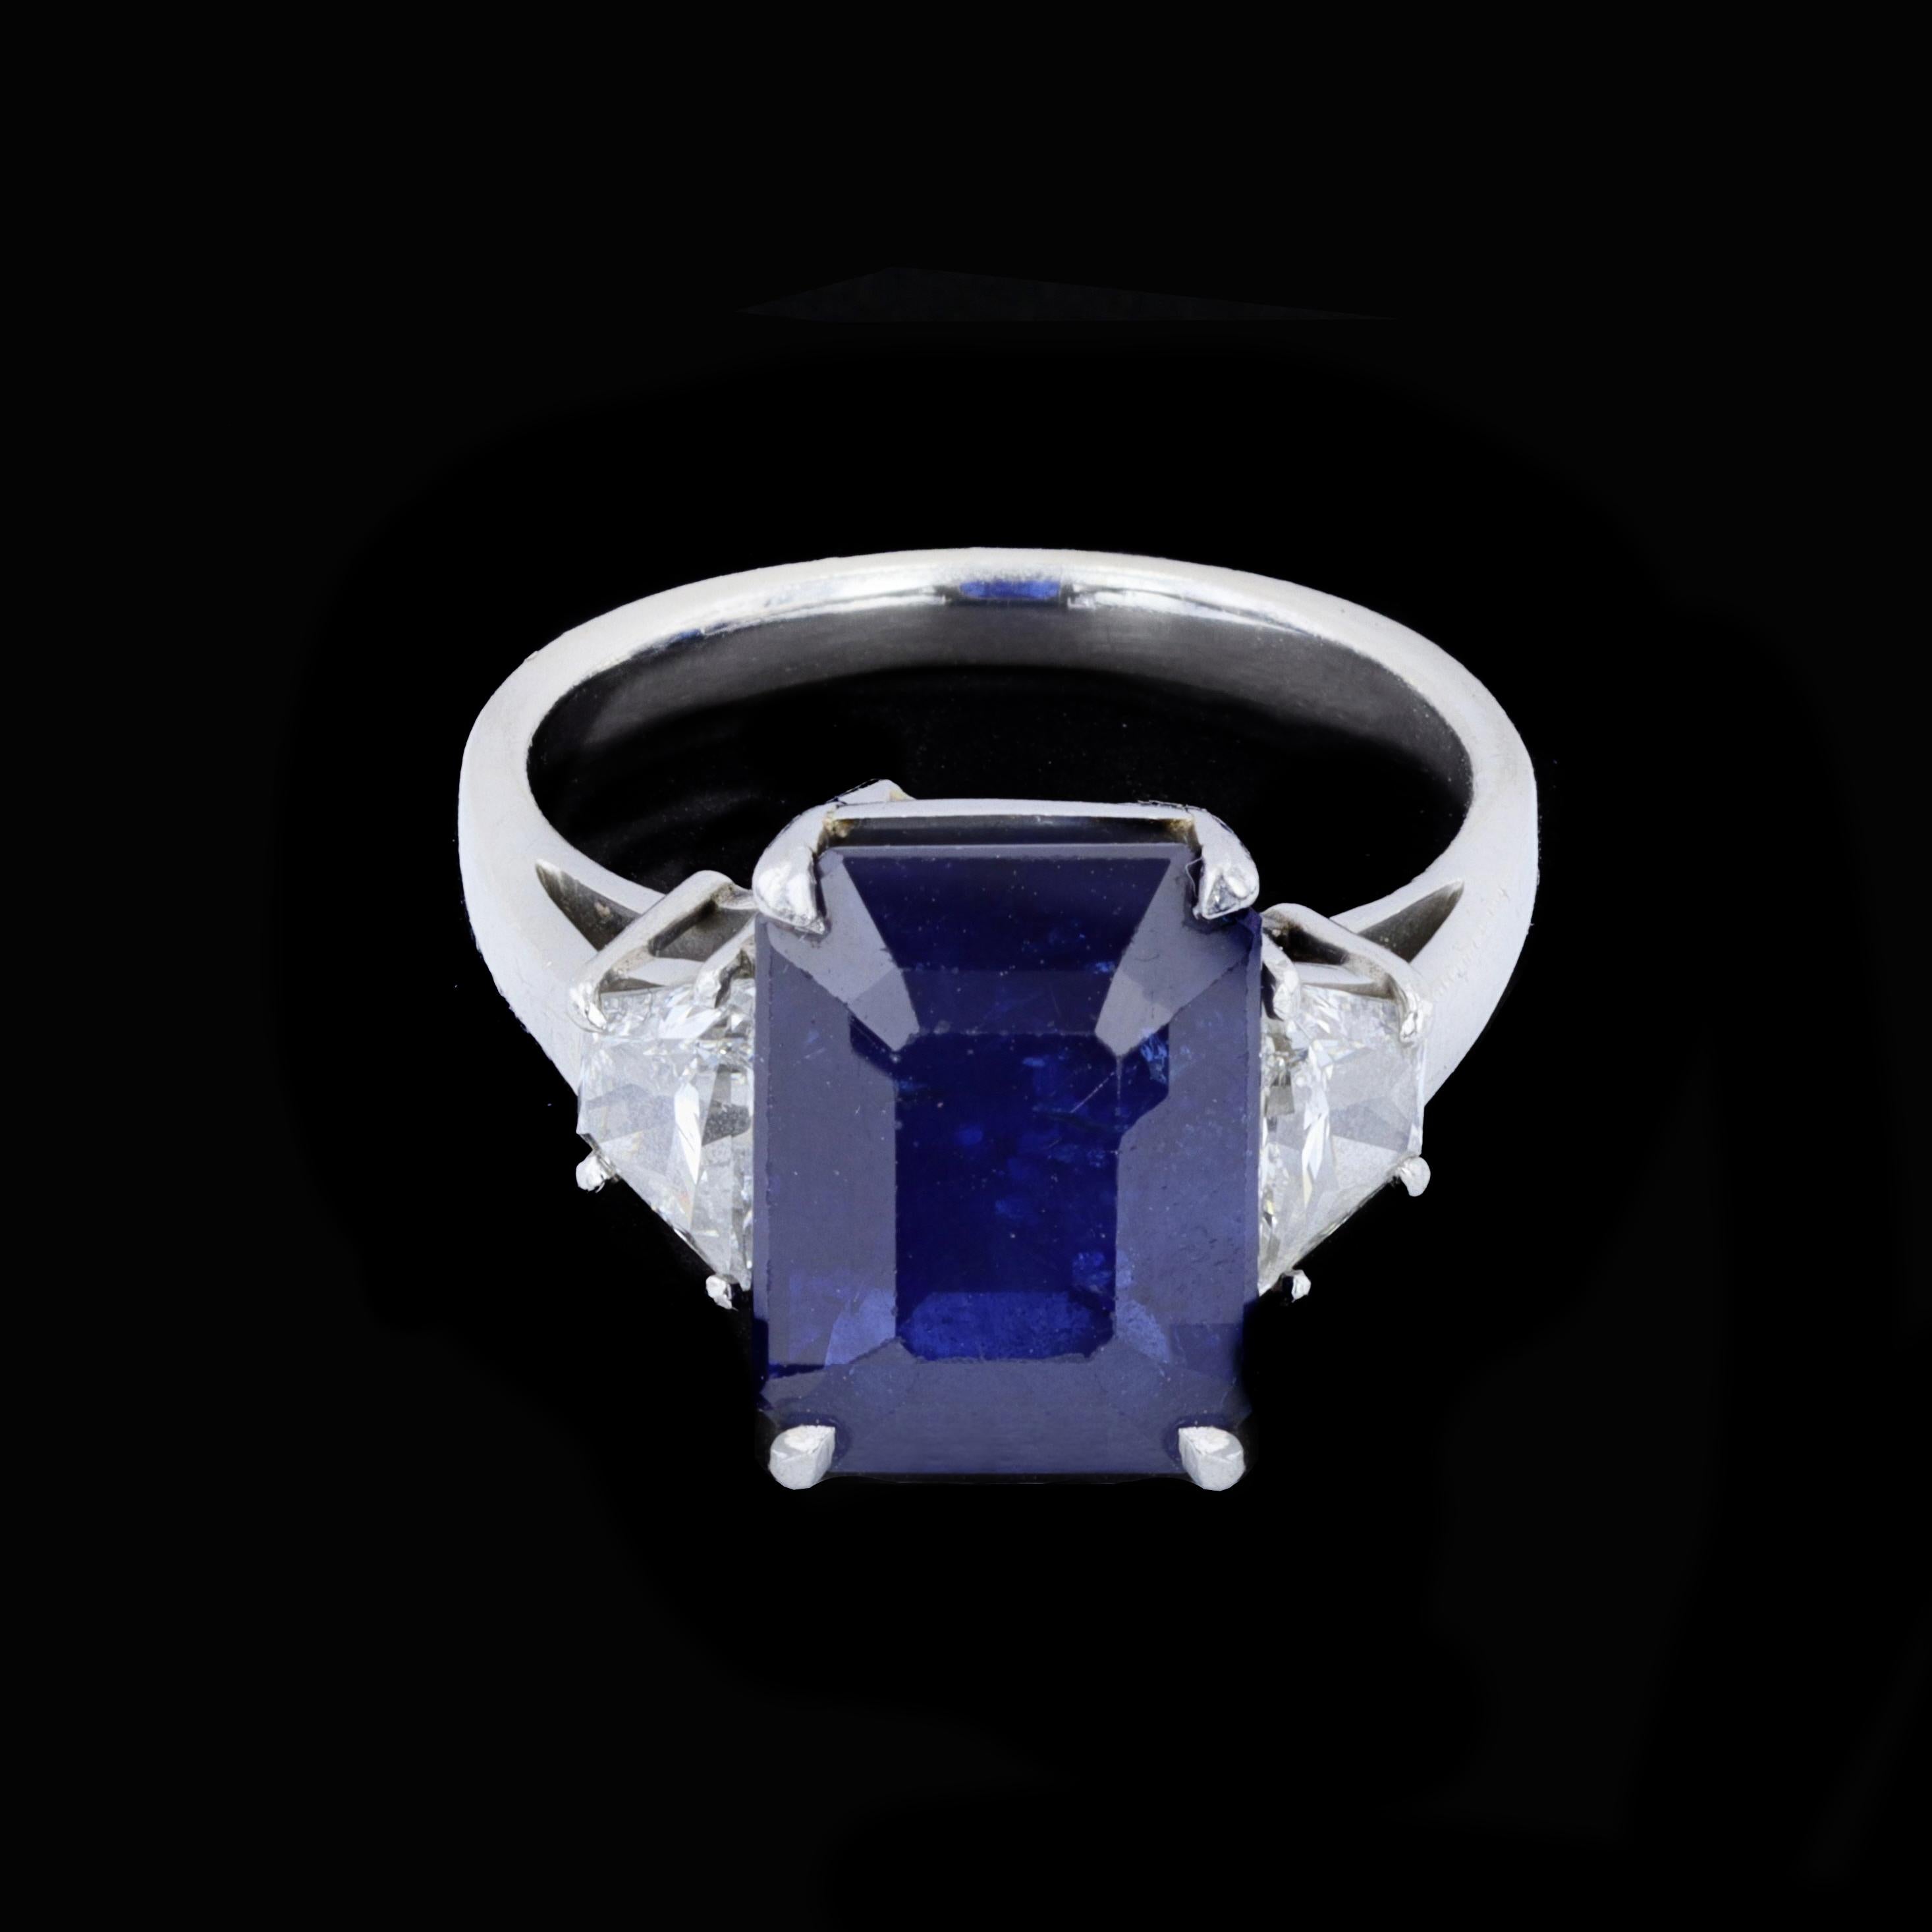 Ein spektakulärer Vintage-Ring mit drei Steinen, Saphiren und Diamanten. Der sattblaue Saphir mit 7,59 ct im Smaragdschliff wird von zwei trapezförmigen Diamanten mit einem Gewicht von 0,87 ct getragen und ist in Platin gefasst.

